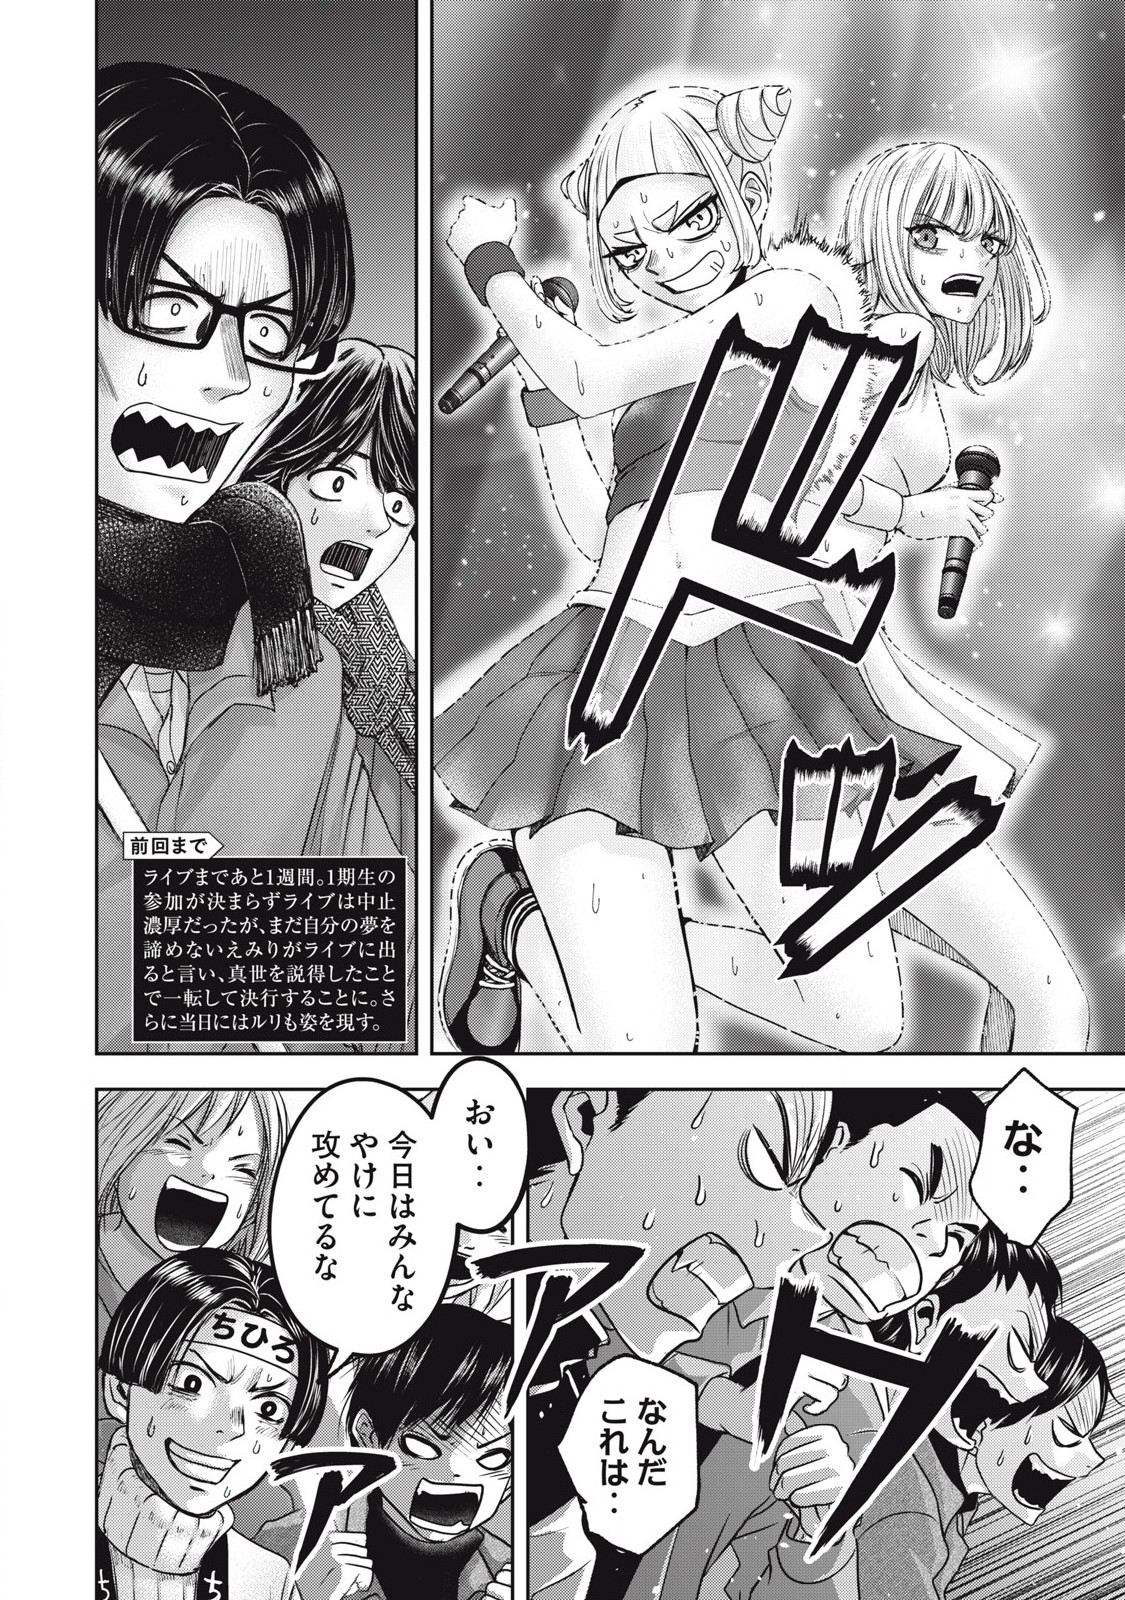 Watashi no Arika - Chapter 58 - Page 2